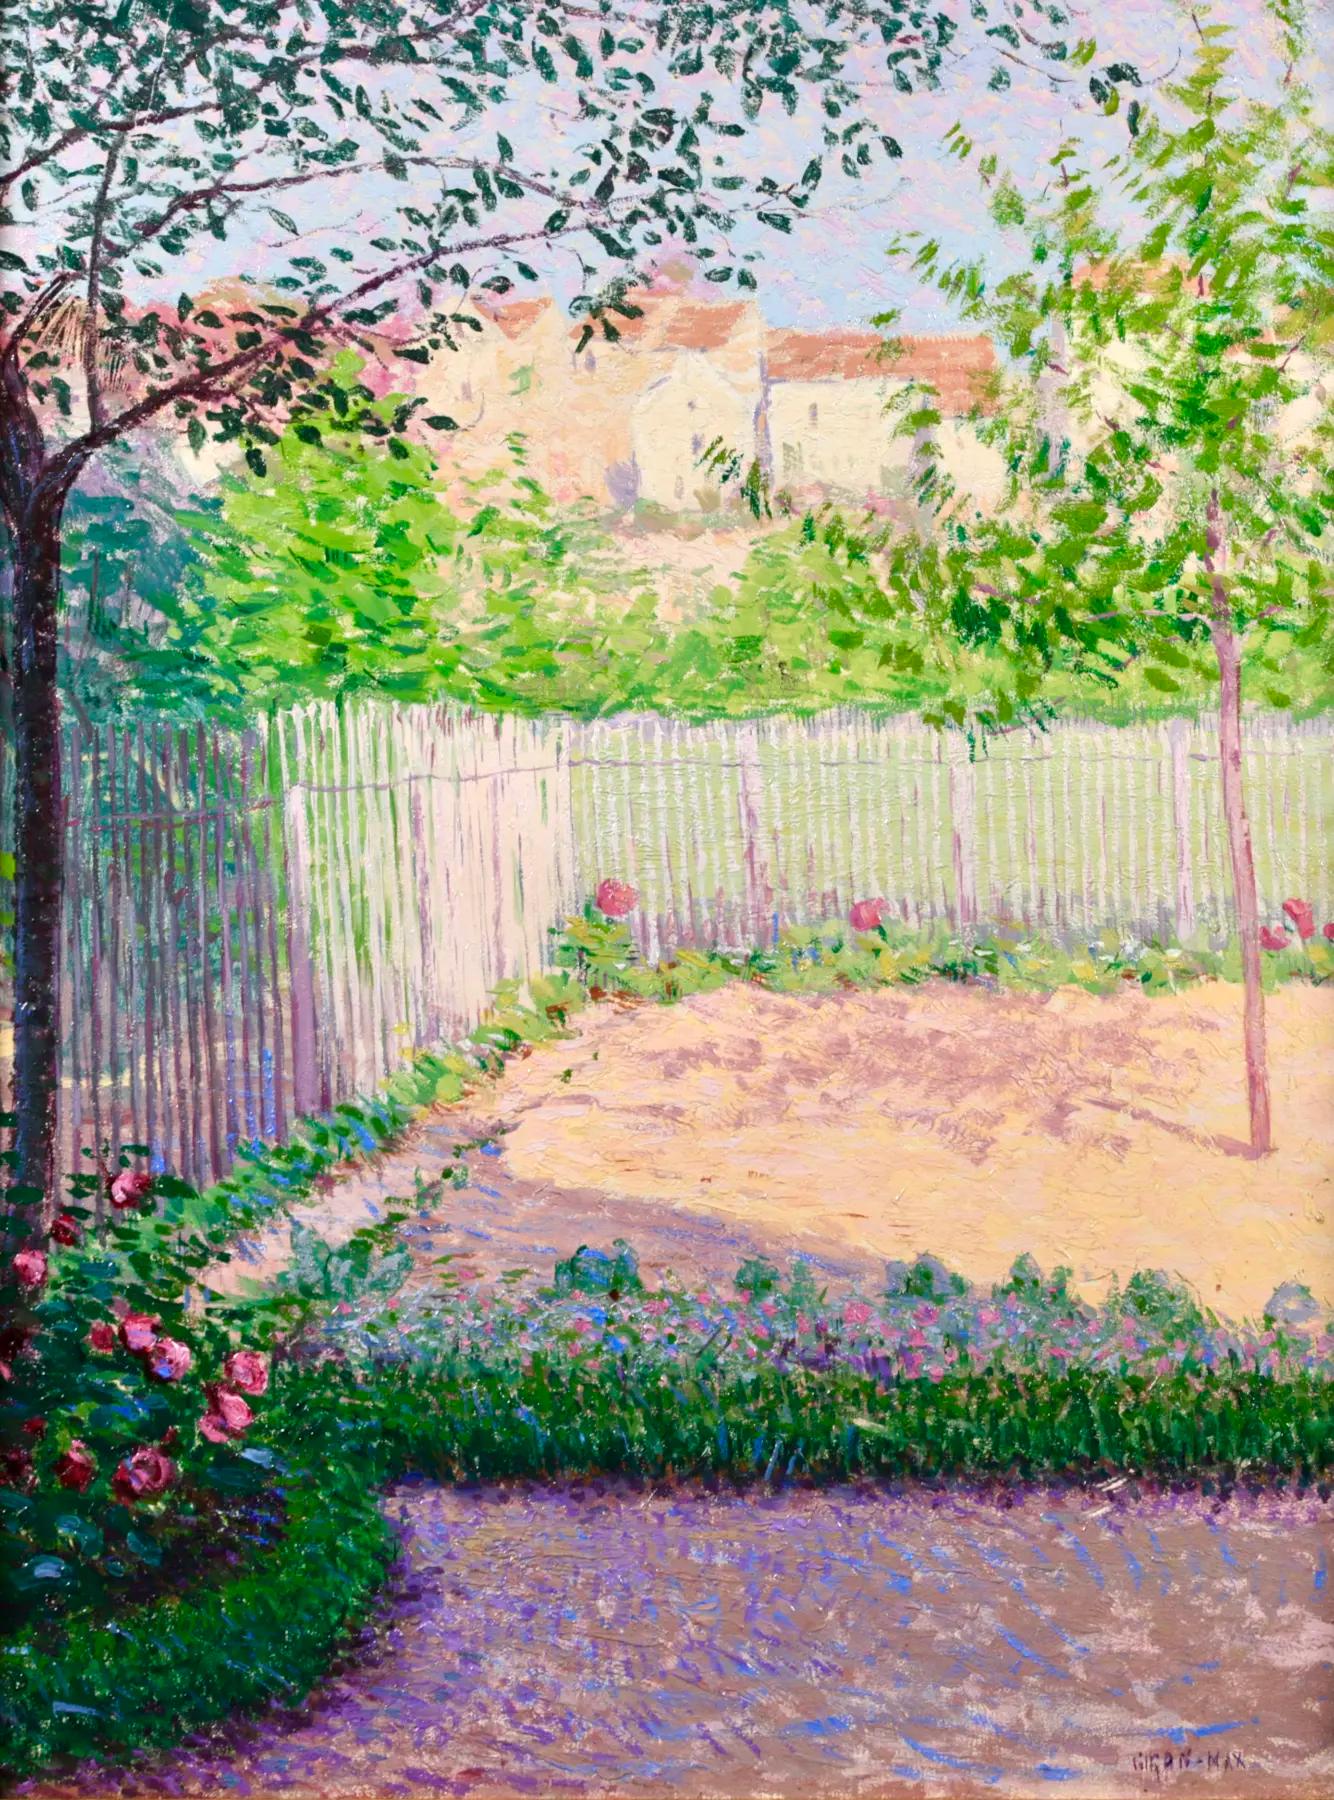 Paysage impressionniste sur panneau signé vers 1900 par le peintre français Léon Giran-Max. L'œuvre représente une vue d'un jardin clôturé avec des fleurs roses contrastant avec le feuillage vert des parterres de fleurs. Au-delà de la clôture, on